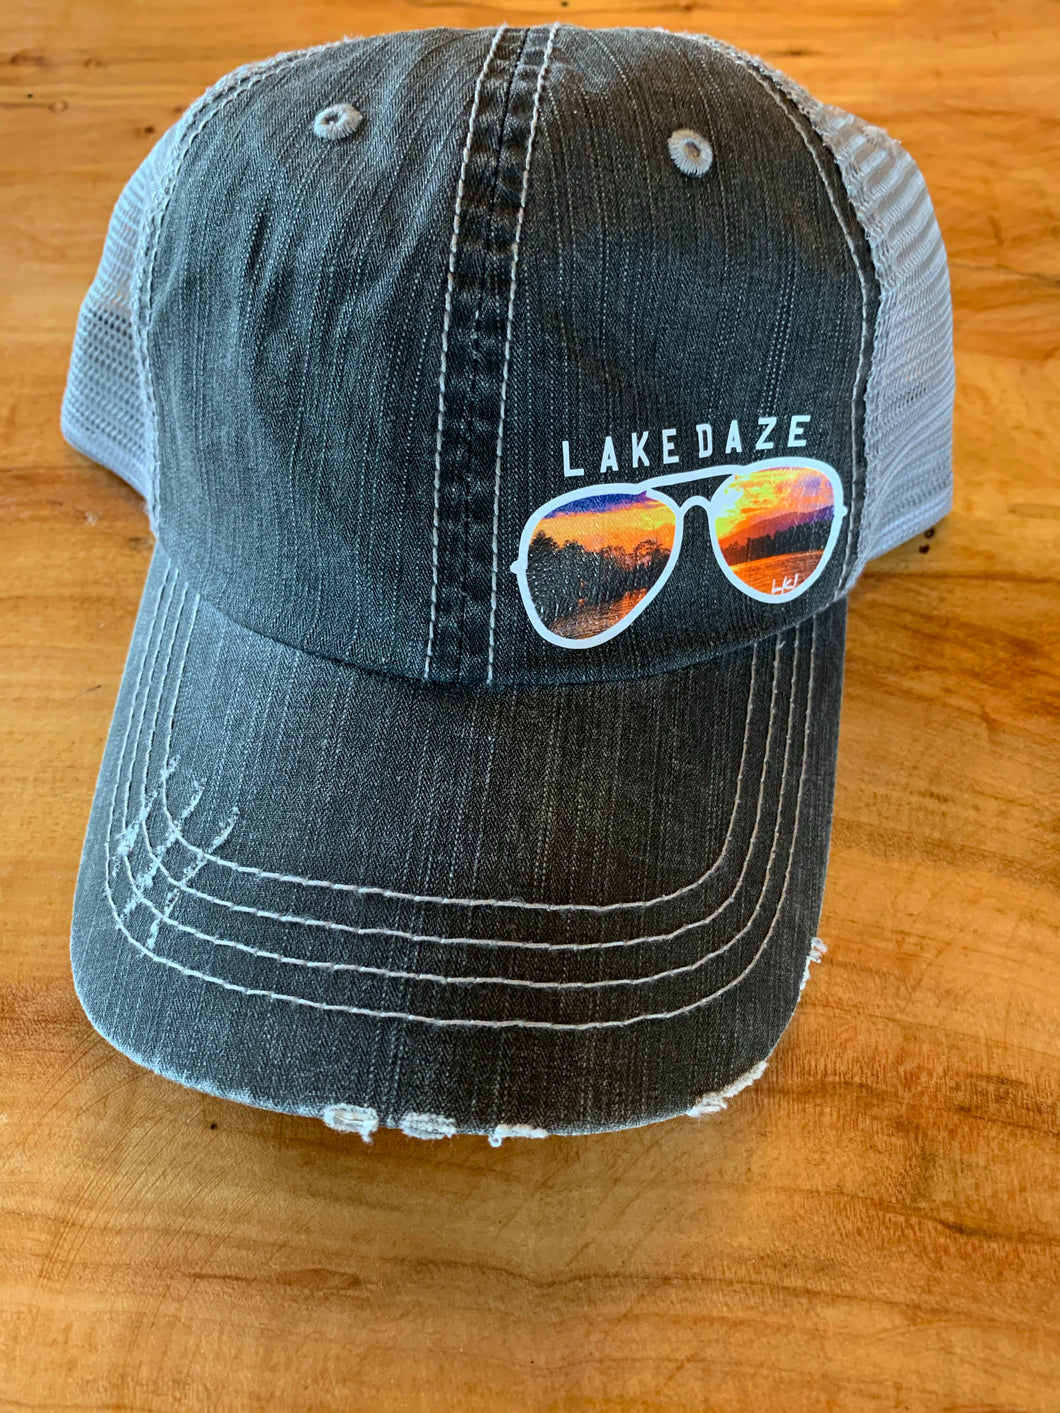 Lake Daze - Lake James Sunset Distressed Hat